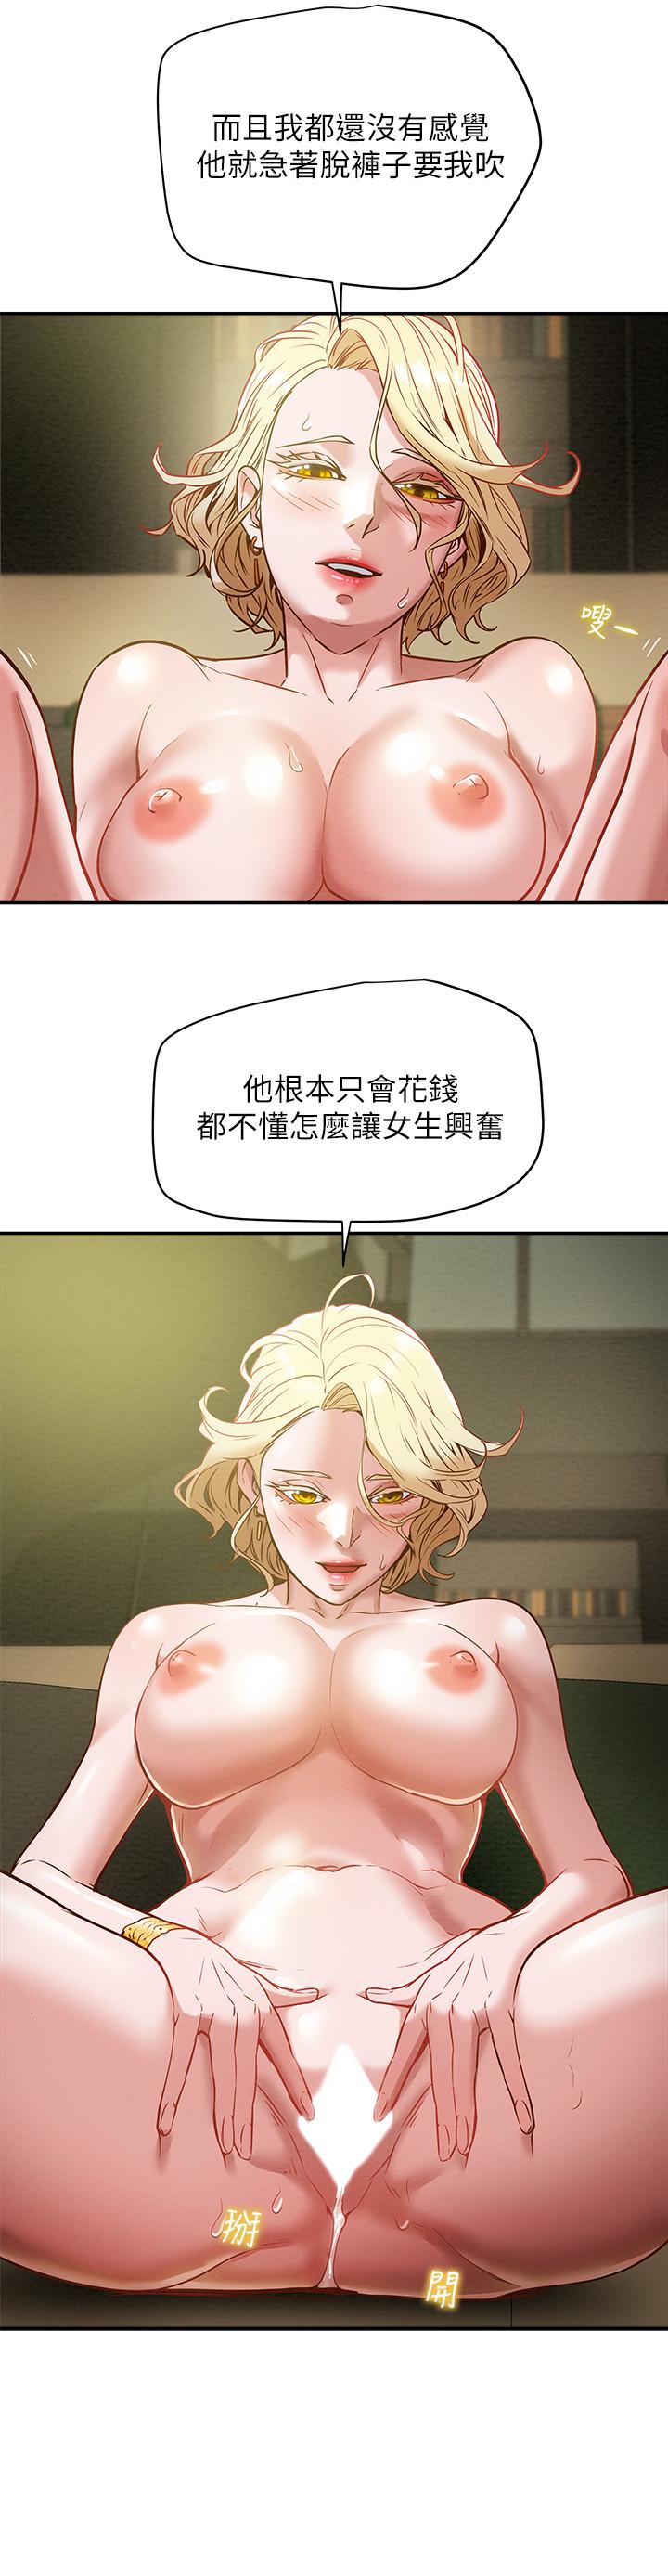 韩国污漫画 純情女攻略計劃 第9话-使男人疯狂的高超技巧 13